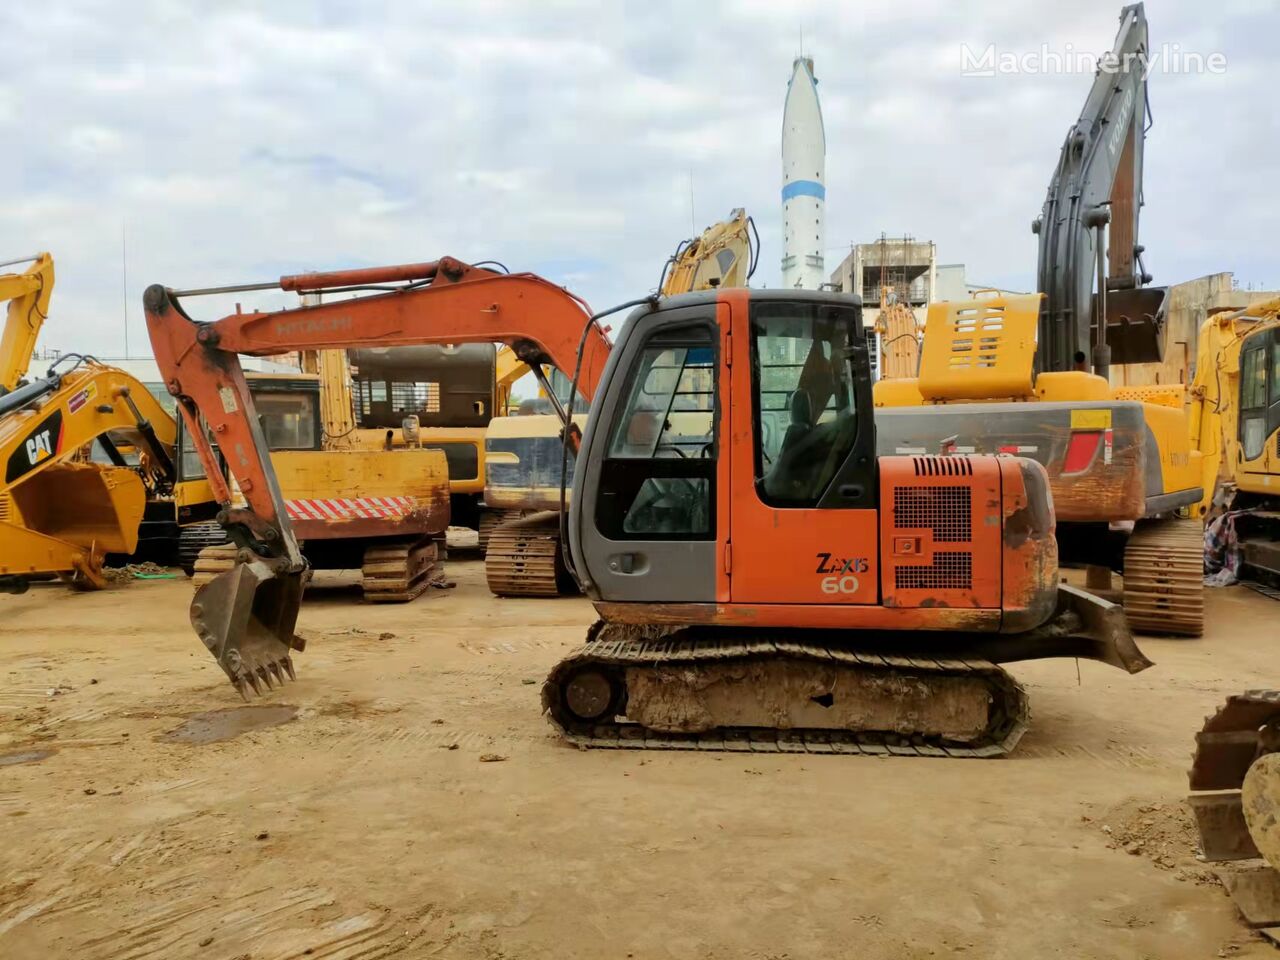 Hitachi ZX60 tracked excavator